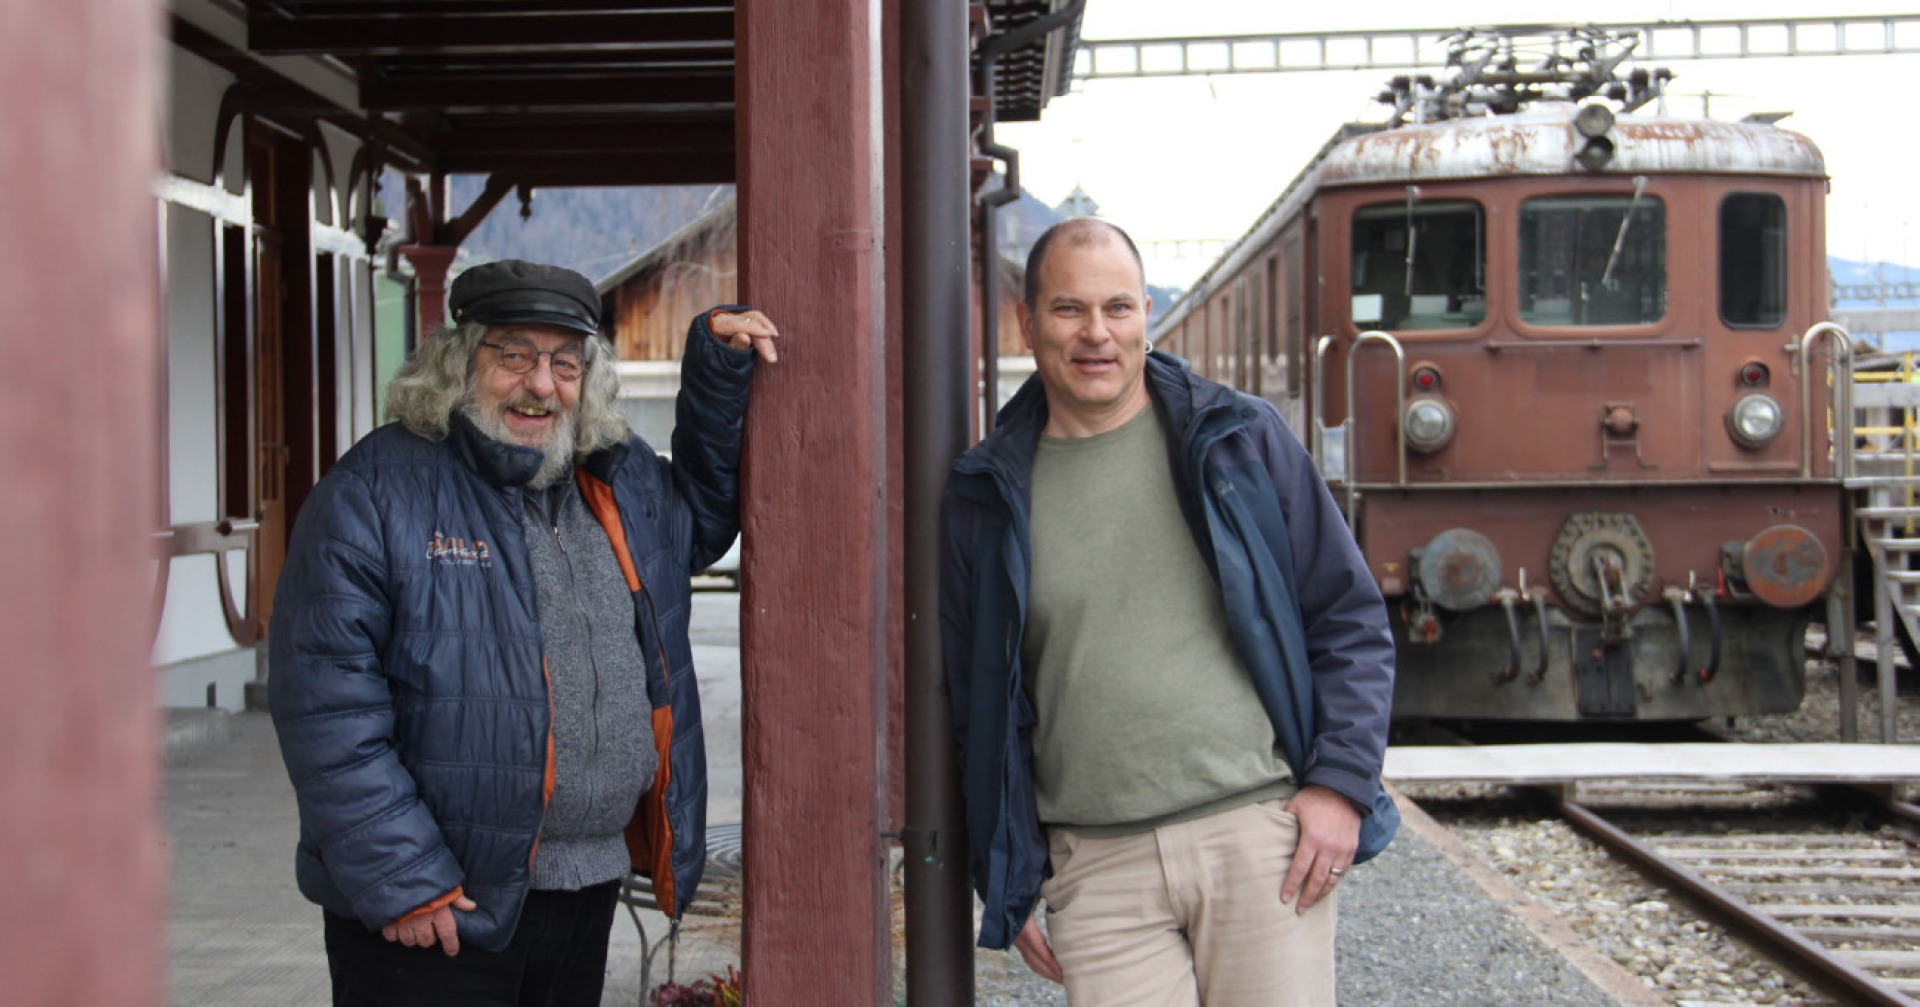 Drehbuchautor Ueli Schmid (l.) und Regisseur Mitja Staub beim historischen Bahnhof. Links im Bild wird sich der Bühnenbereich befinden. BILD: JULIAN ZAHND